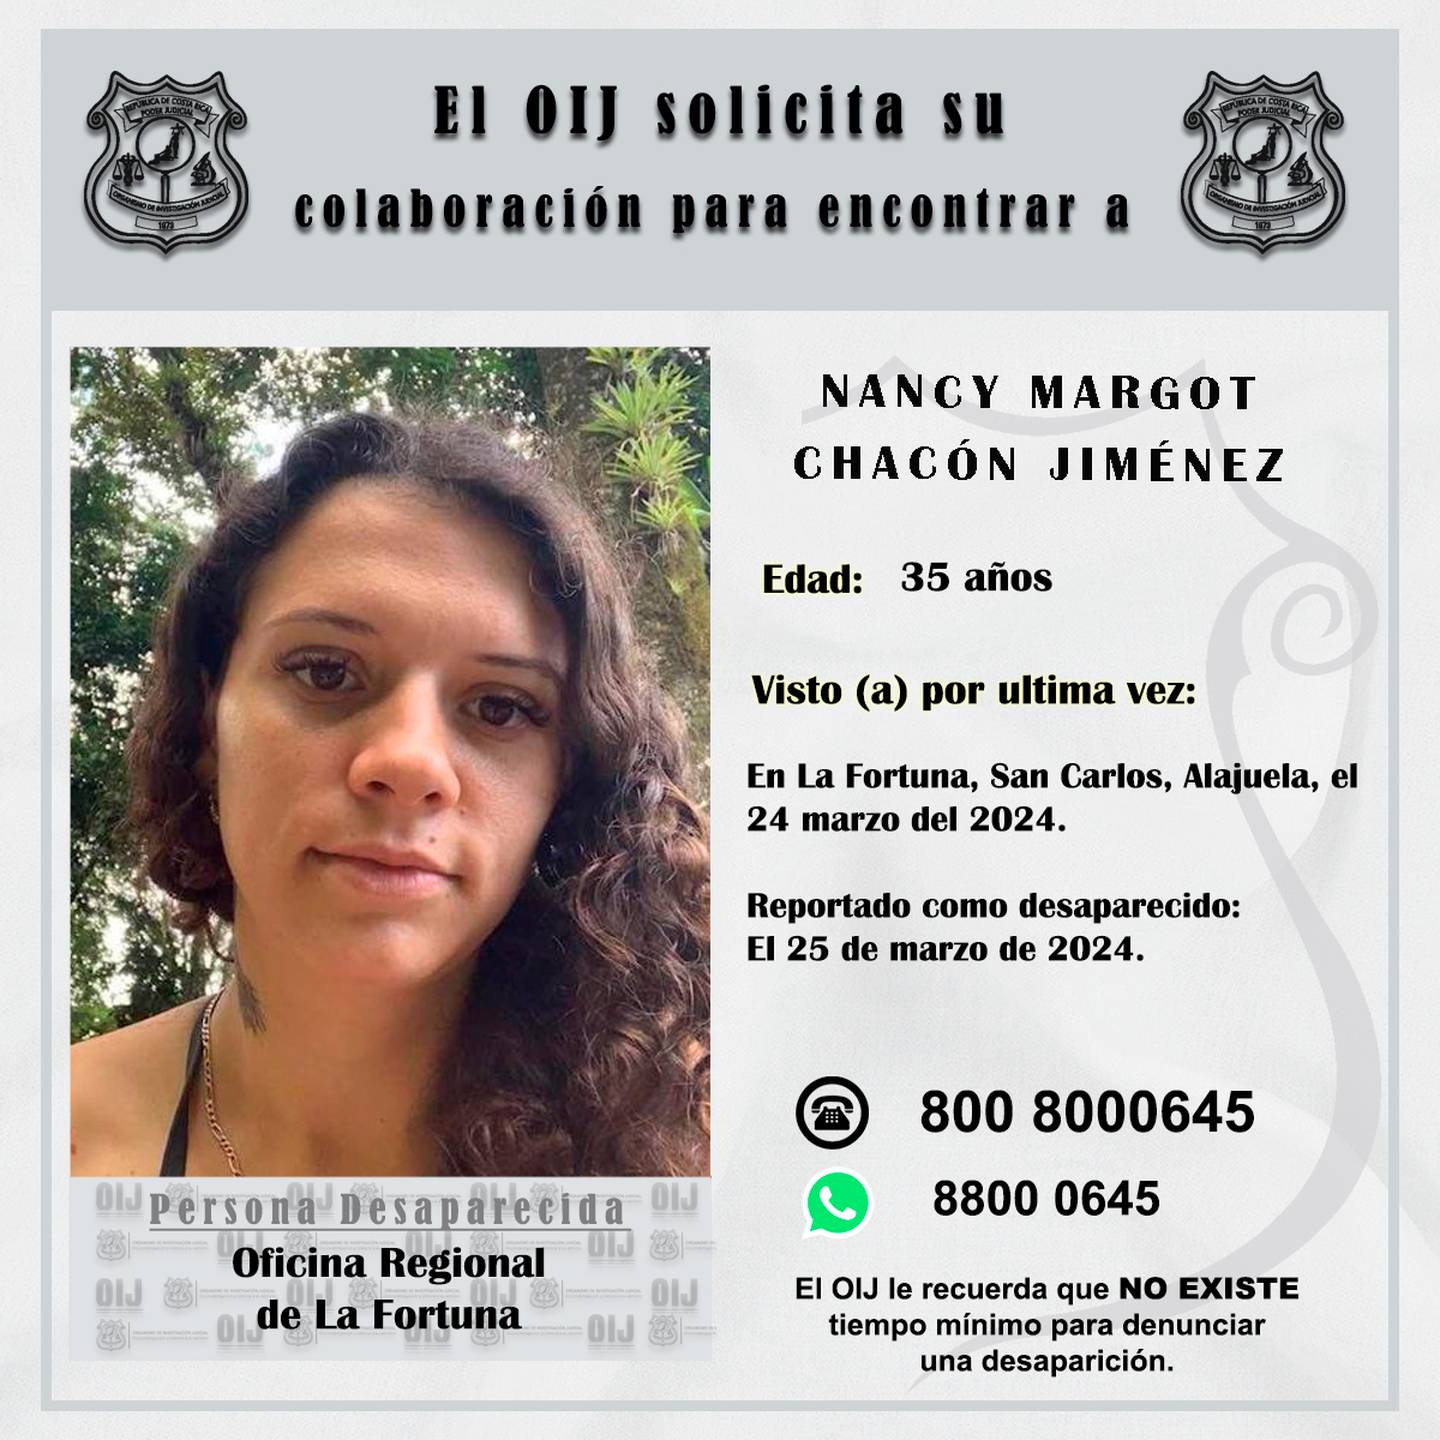 Nancy Margot Chacón Jiménez salió en su carro en La Fortuna de San Carlos el domingo 24 de marzo y desde entonces desapareció. Foto: OIJ